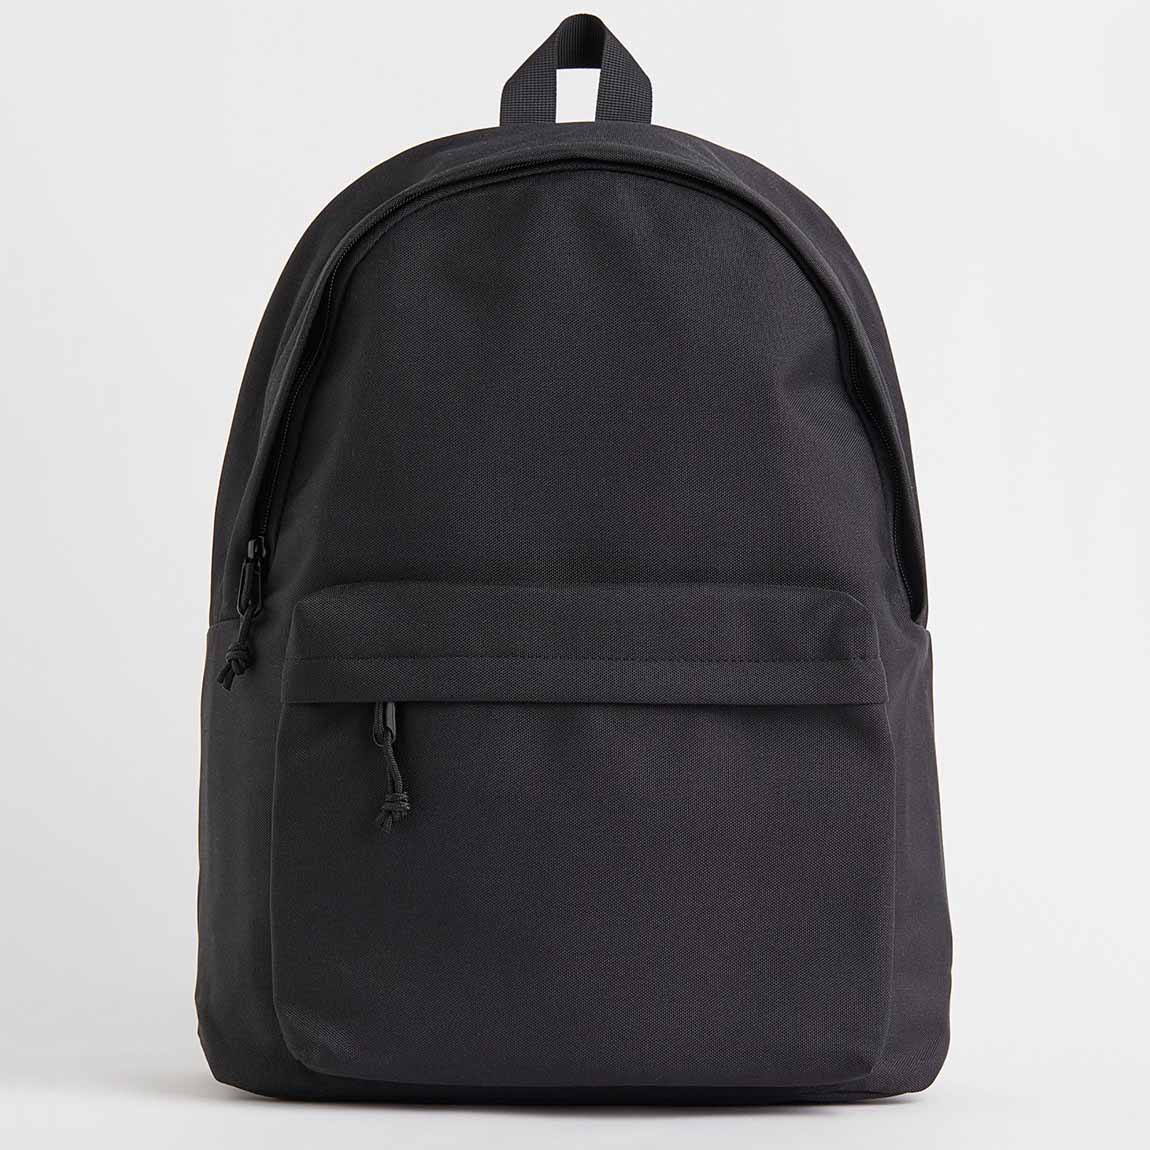 H&M black backpack